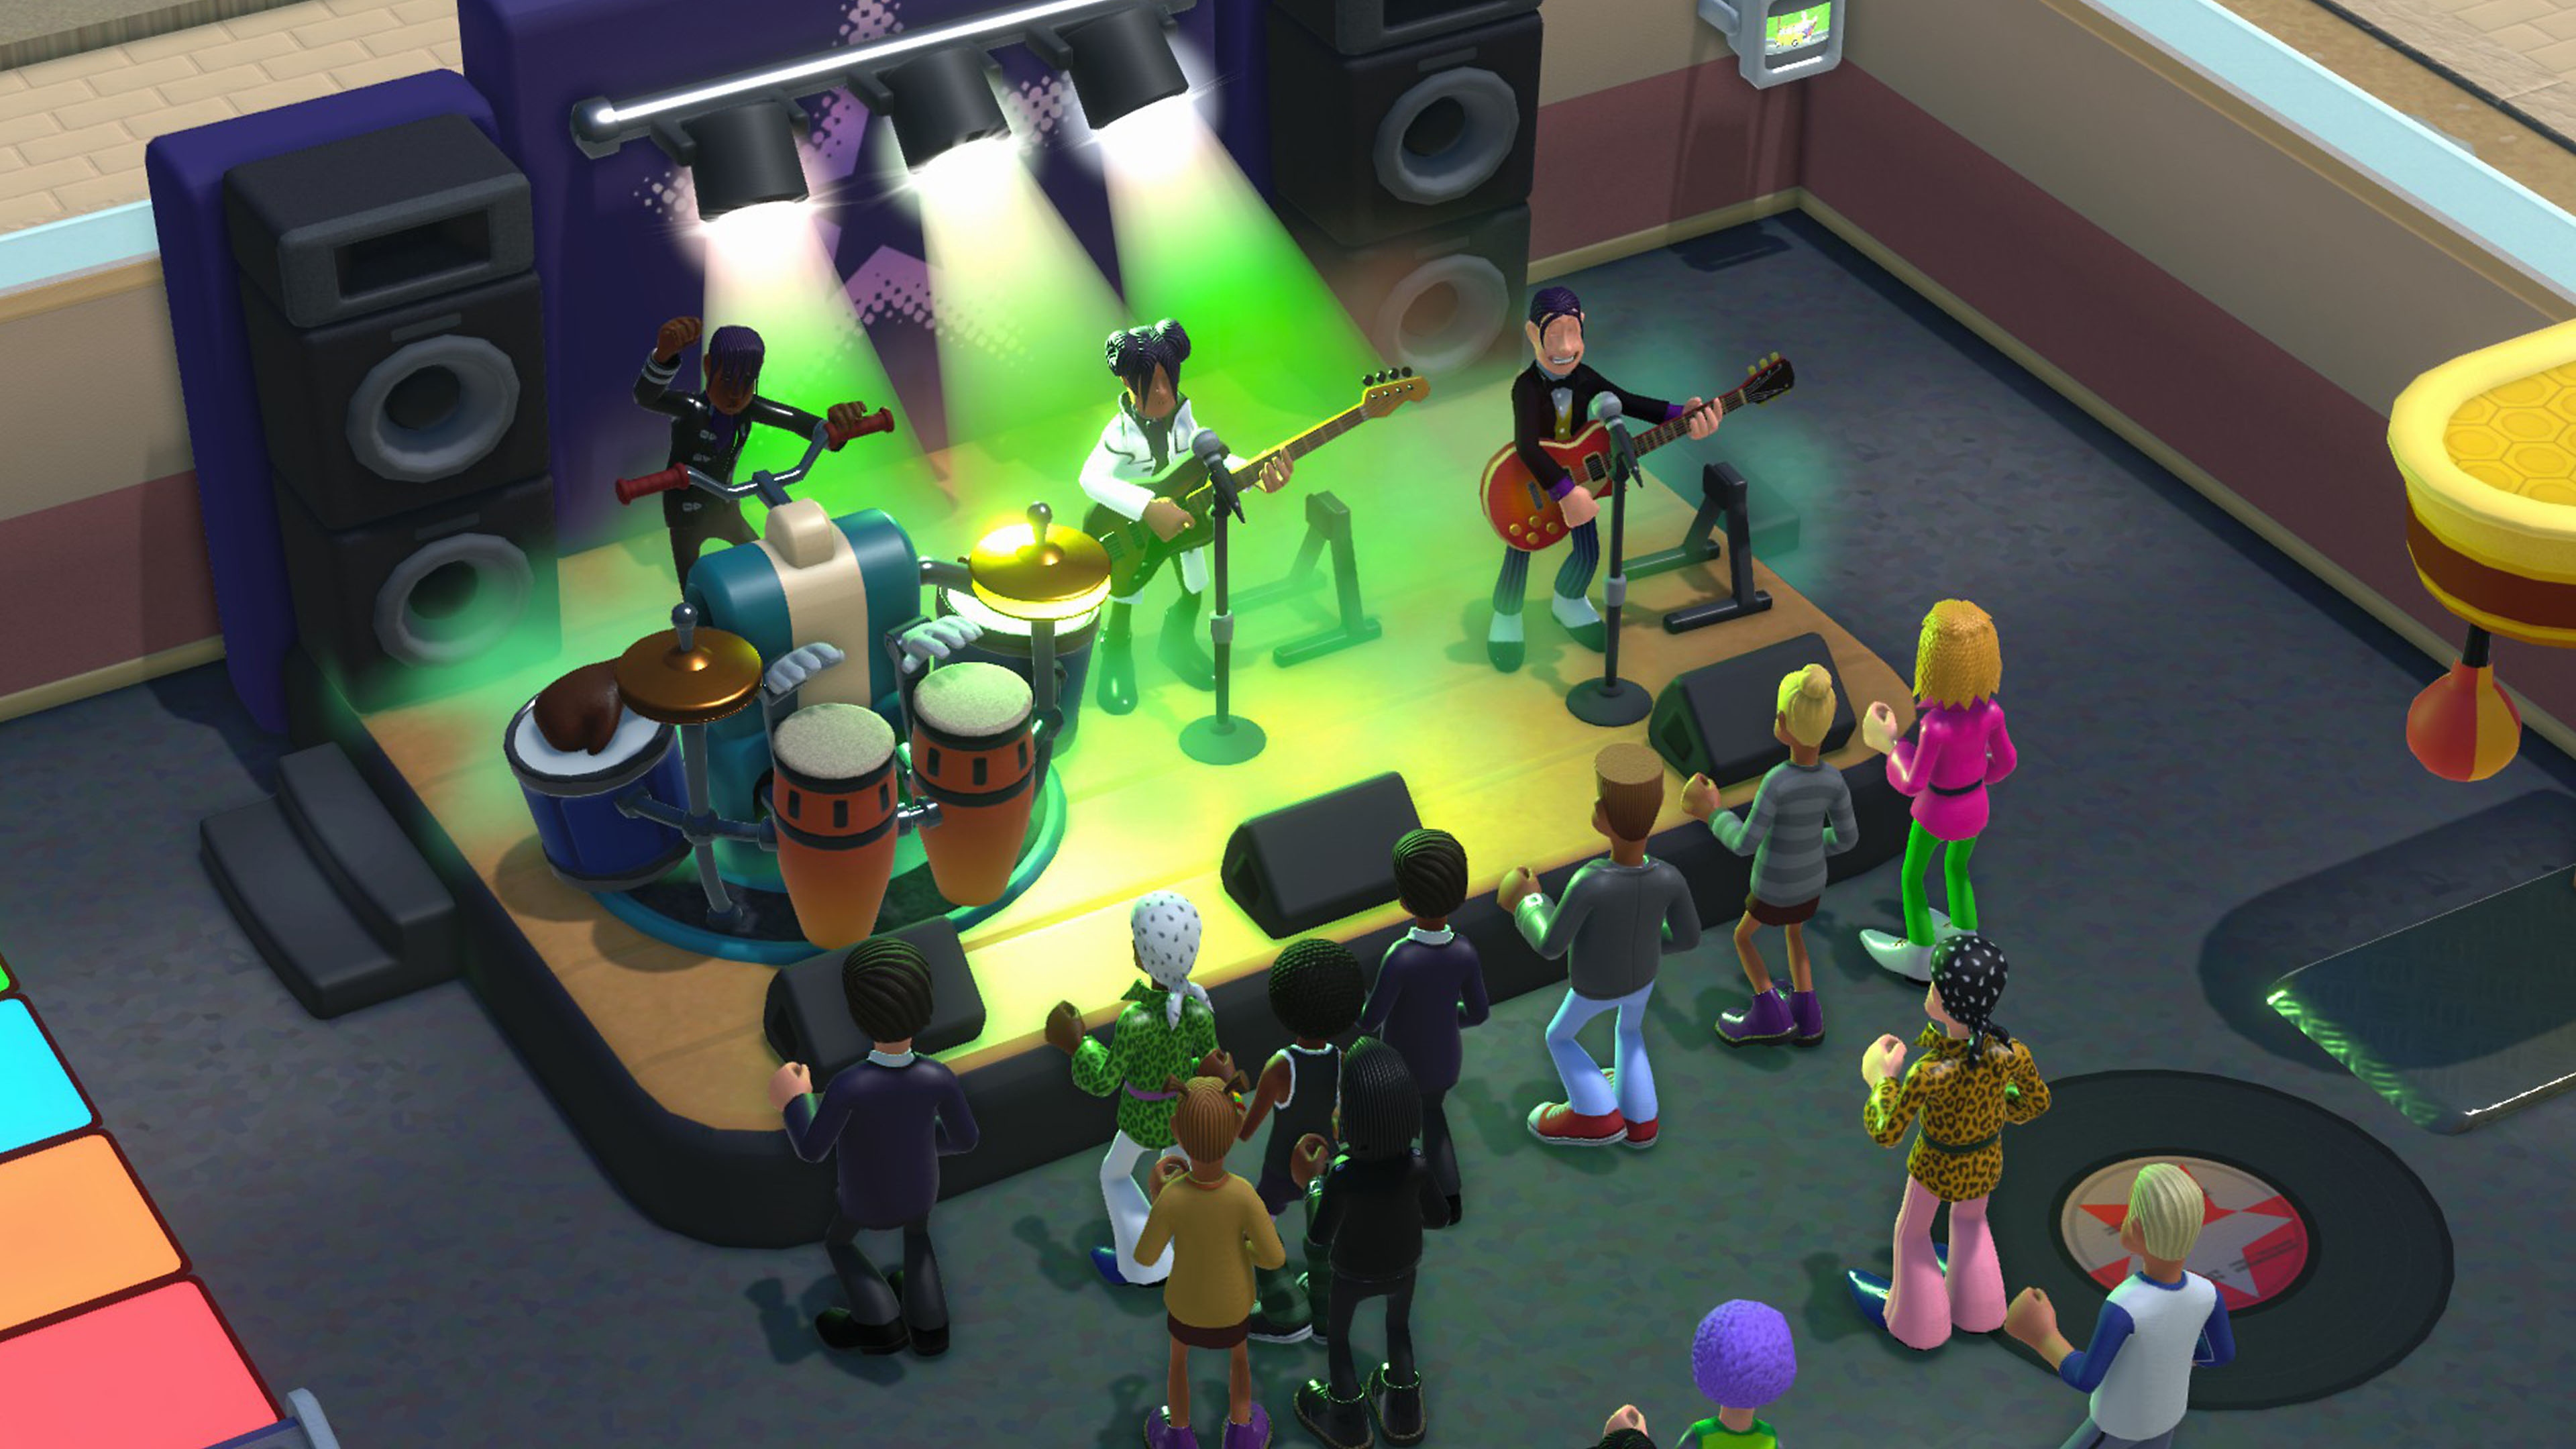 Screenshot von Two Point Campus, auf dem eine Band zu sehen ist, die auf einer Bühne spielt.